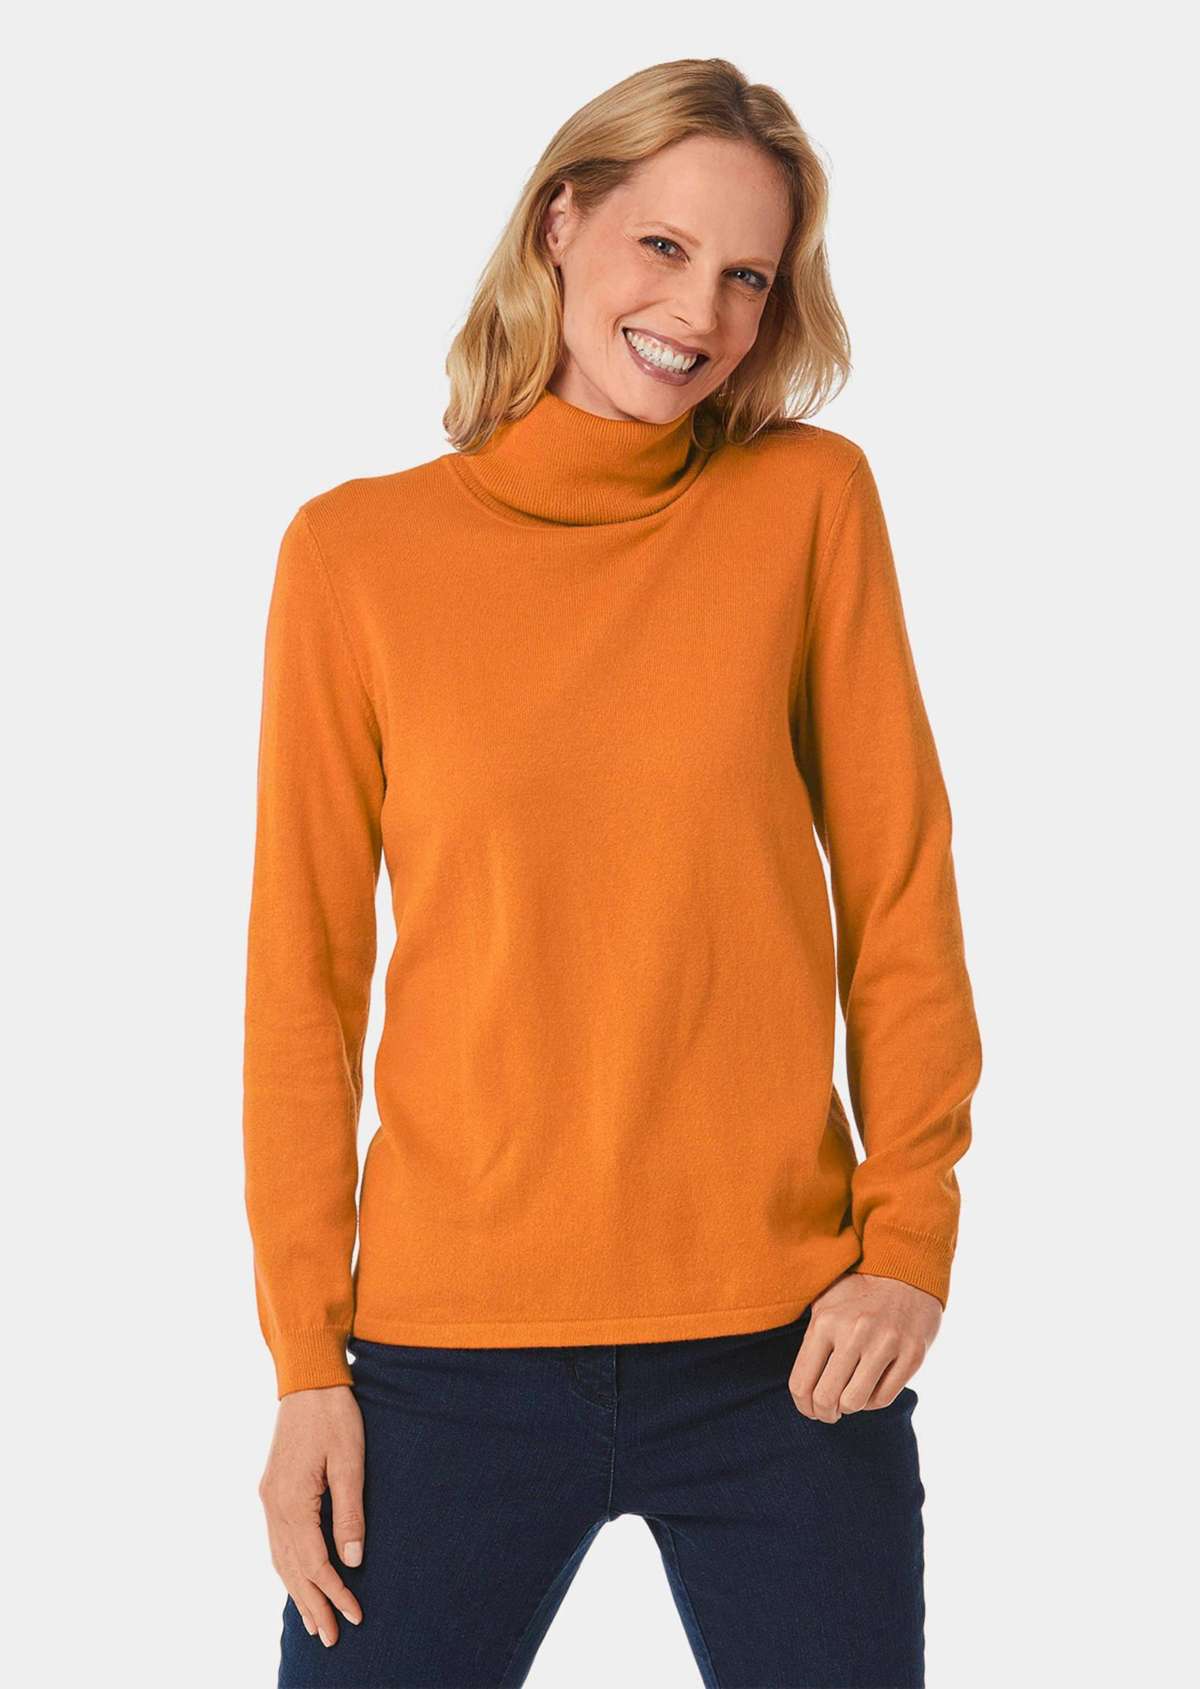 Модный свитер с высоким воротником